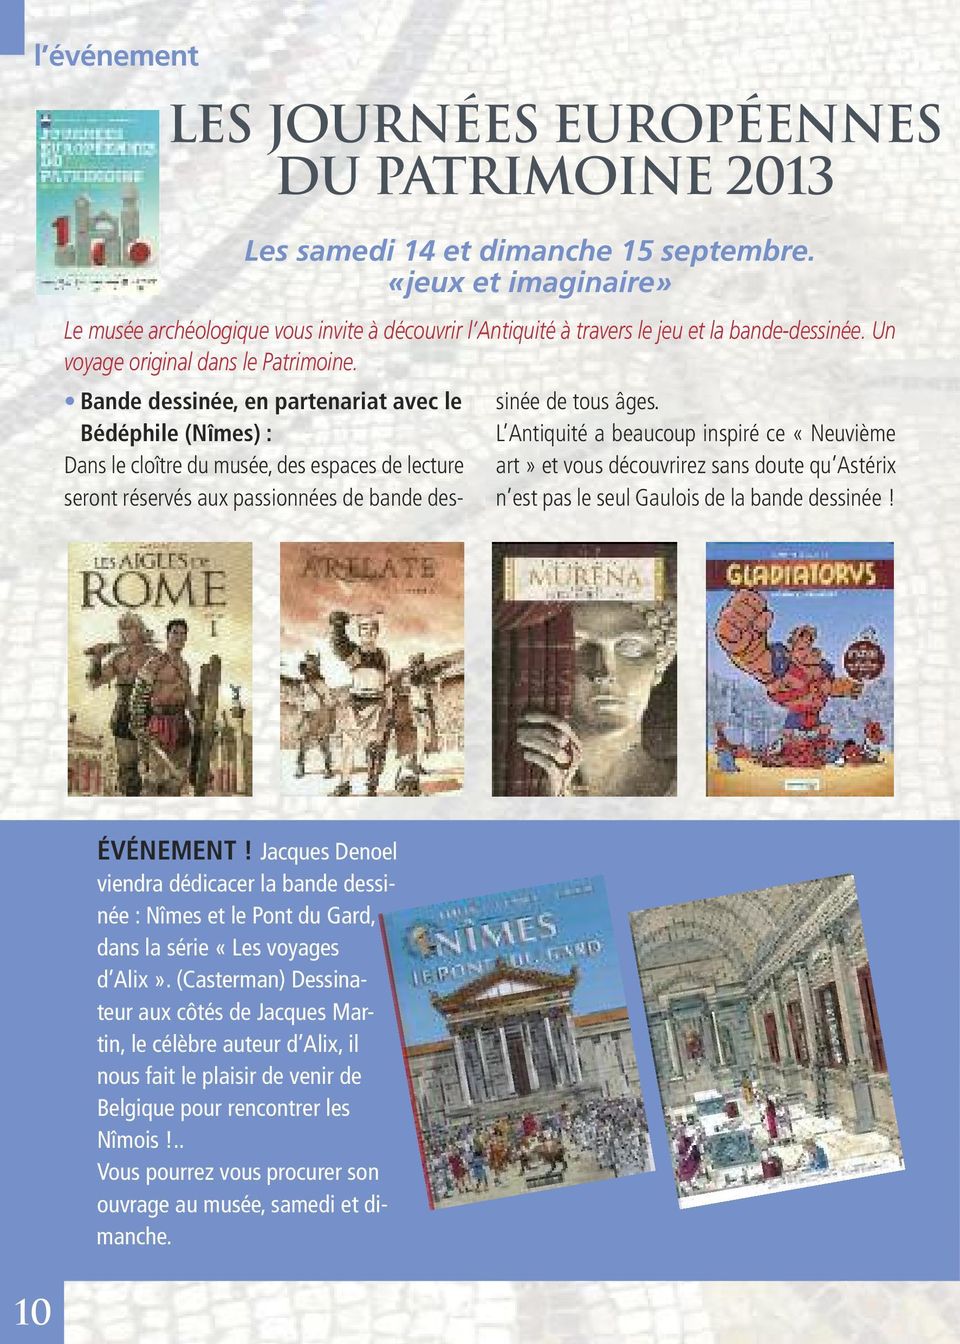 Bande dessinée, en partenariat avec le Bédéphile (Nîmes) : Dans le cloître du musée, des espaces de lecture seront réservés aux passionnées de bande dessinée de tous âges.